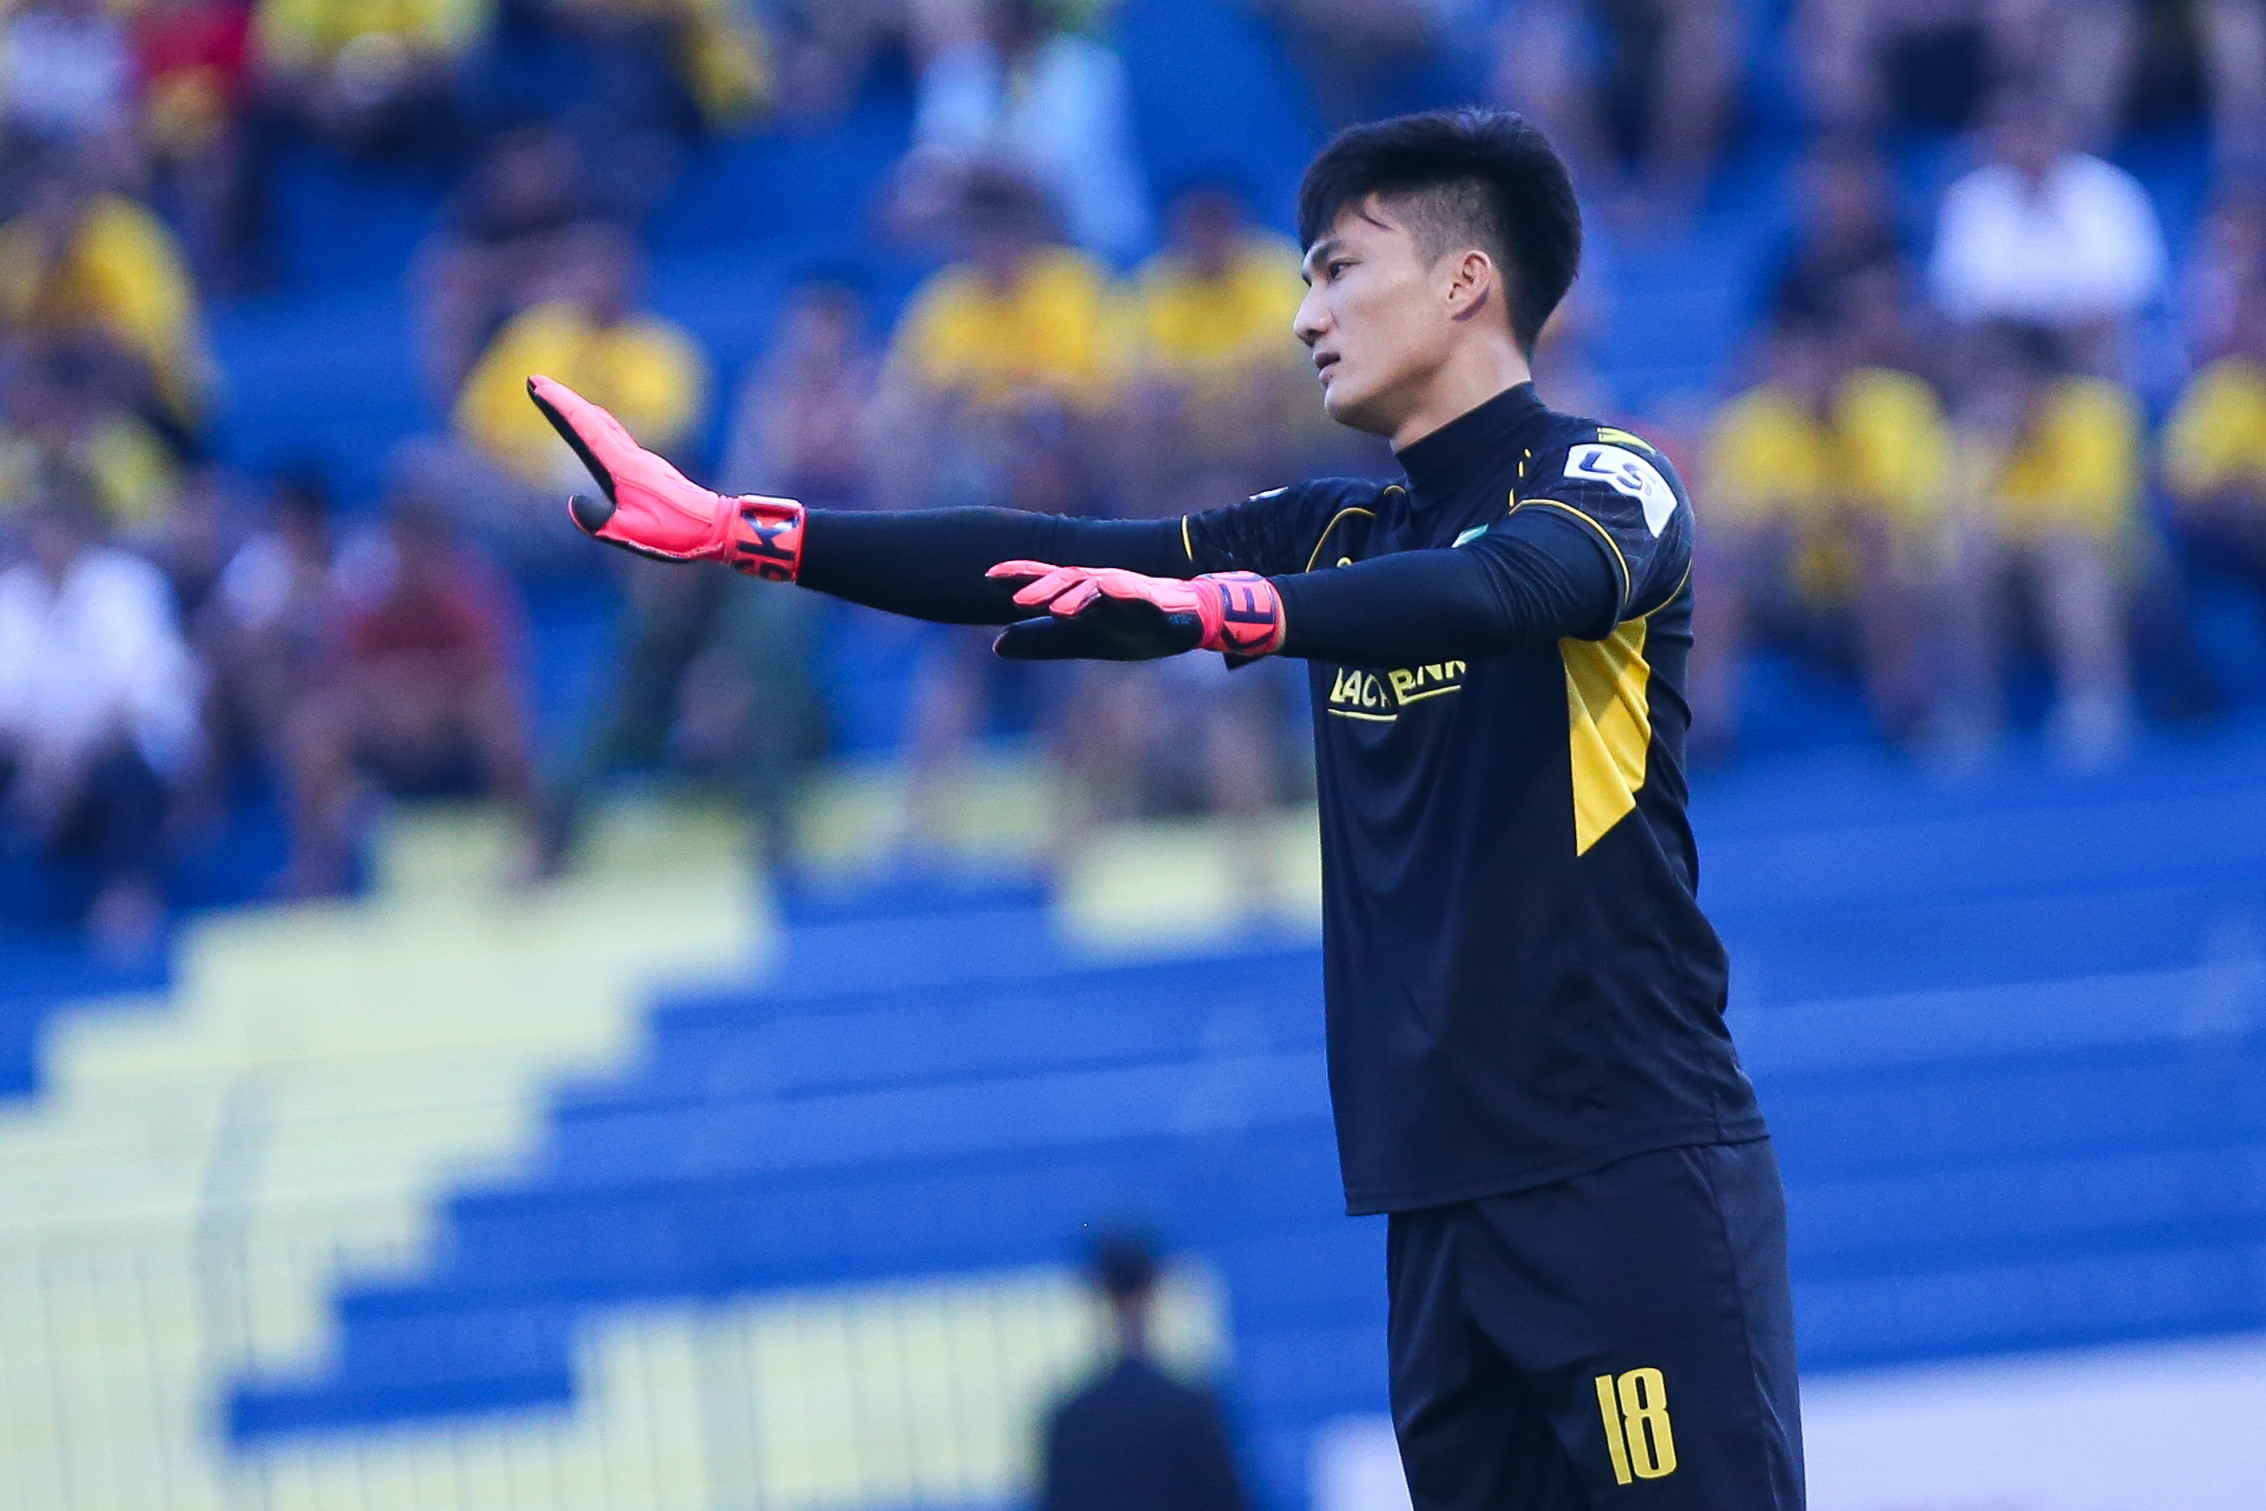 SLNA đang chia sẻ ngôi đầu V.League với 8 điểm cùng 2 trận thắng và 2 trận hòa. Lưới của thủ môn Văn Hoàng chưa rung lên lần nào ở đấu giải vô địch quốc gia. Ảnh: Trung Kiên